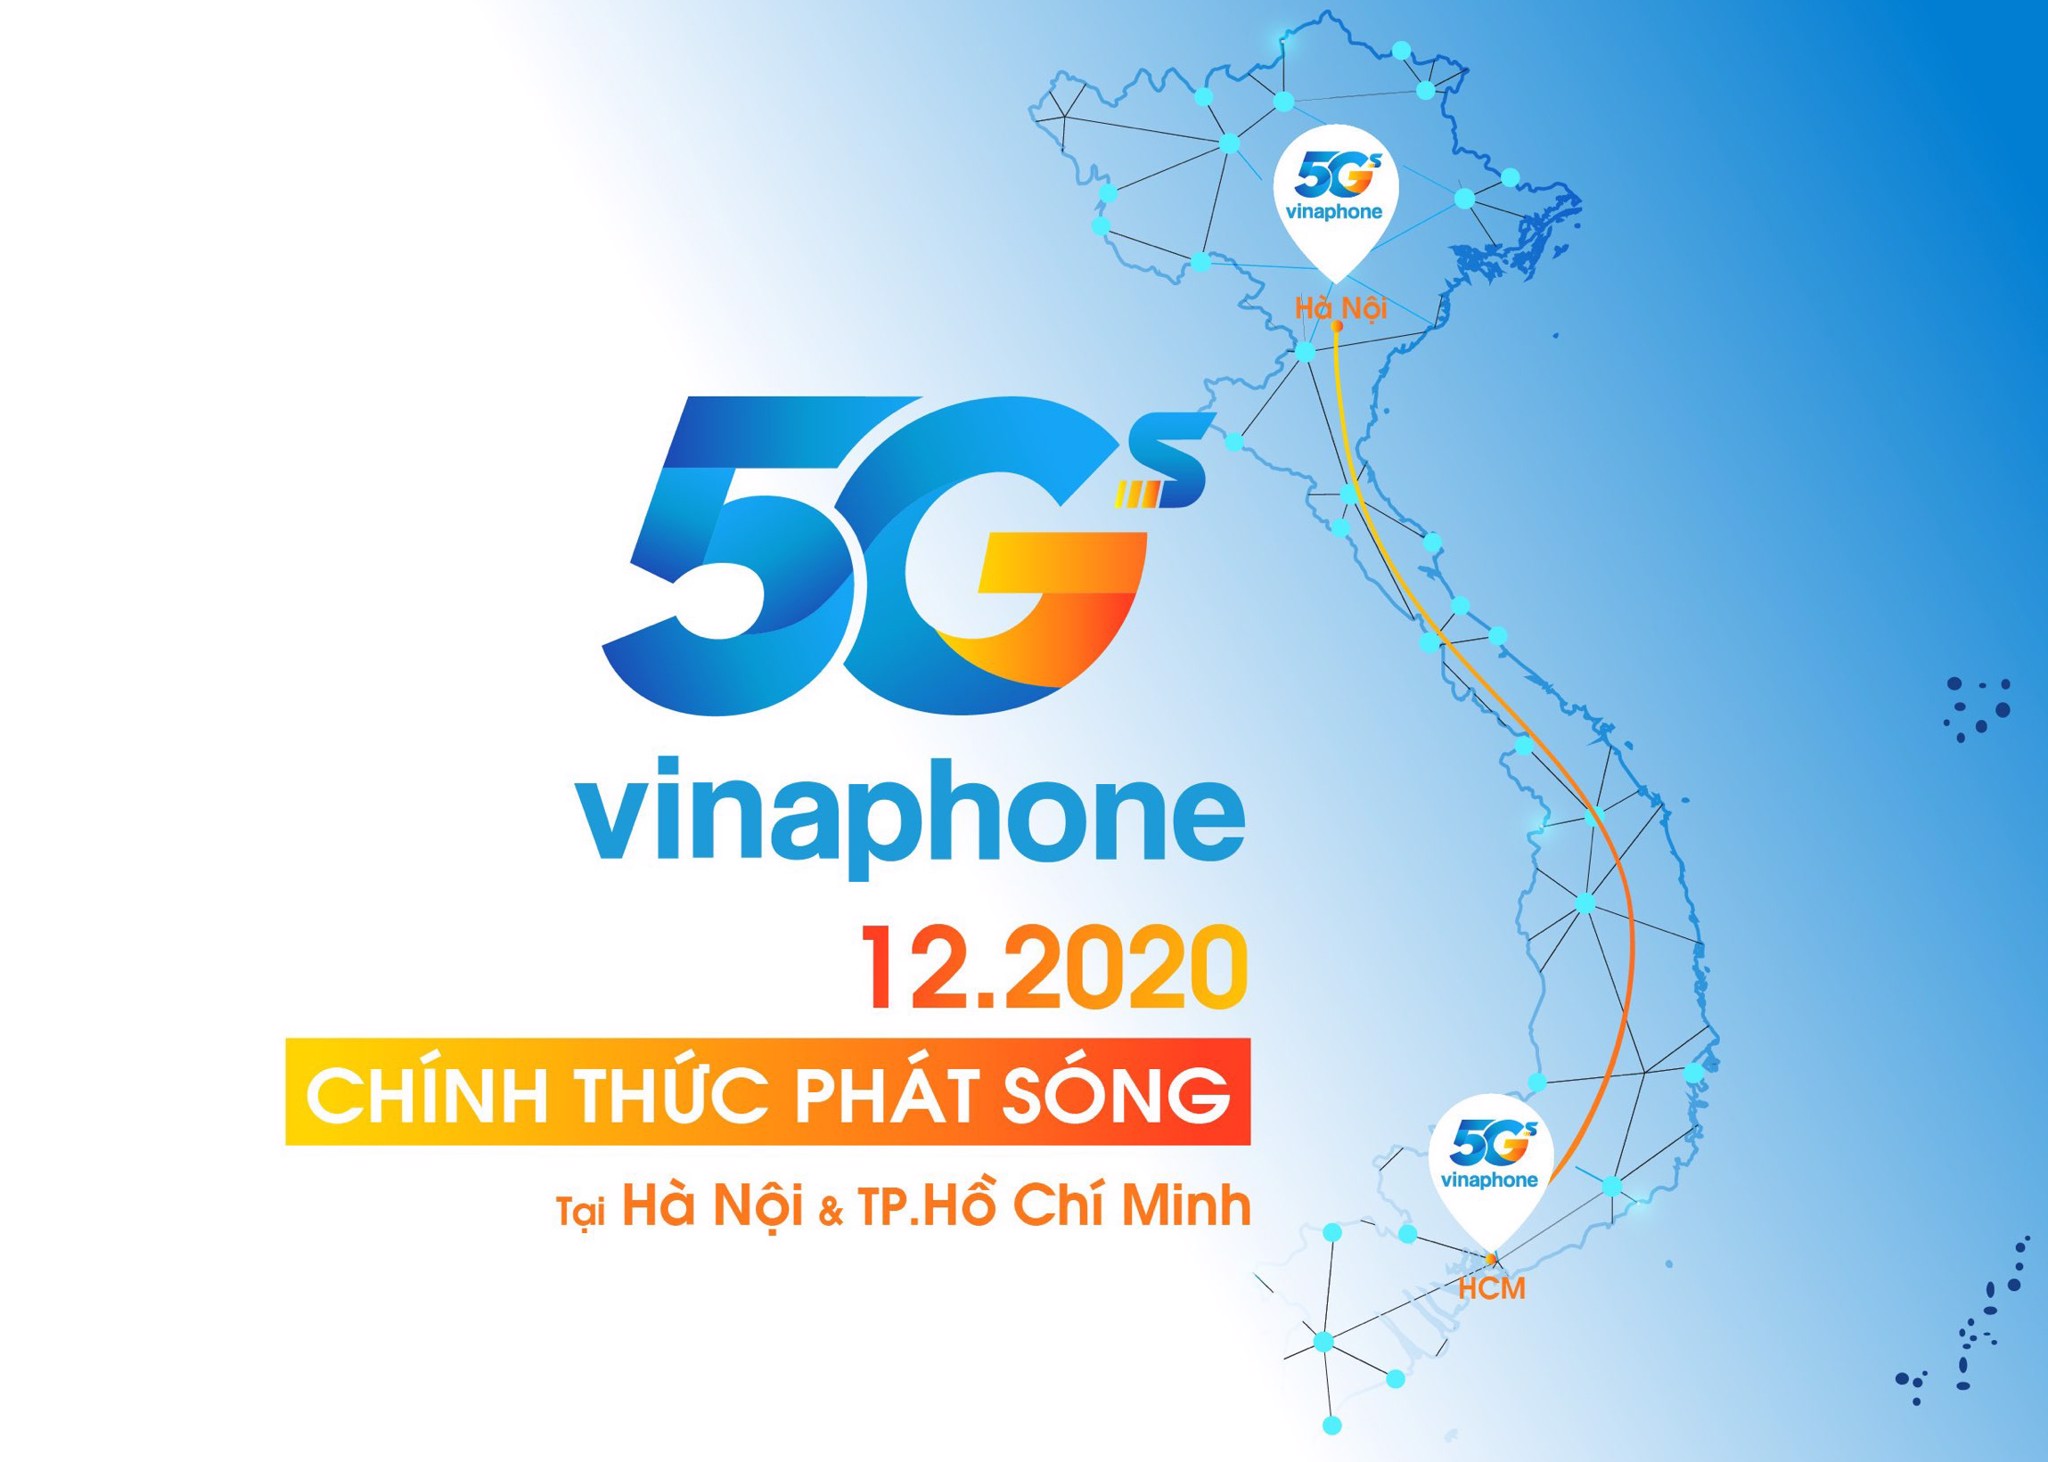 Chính thức phát sóng VinaPhone 5G tại Hà Nội và TP Hồ Chí Minh vào tháng 12/2020